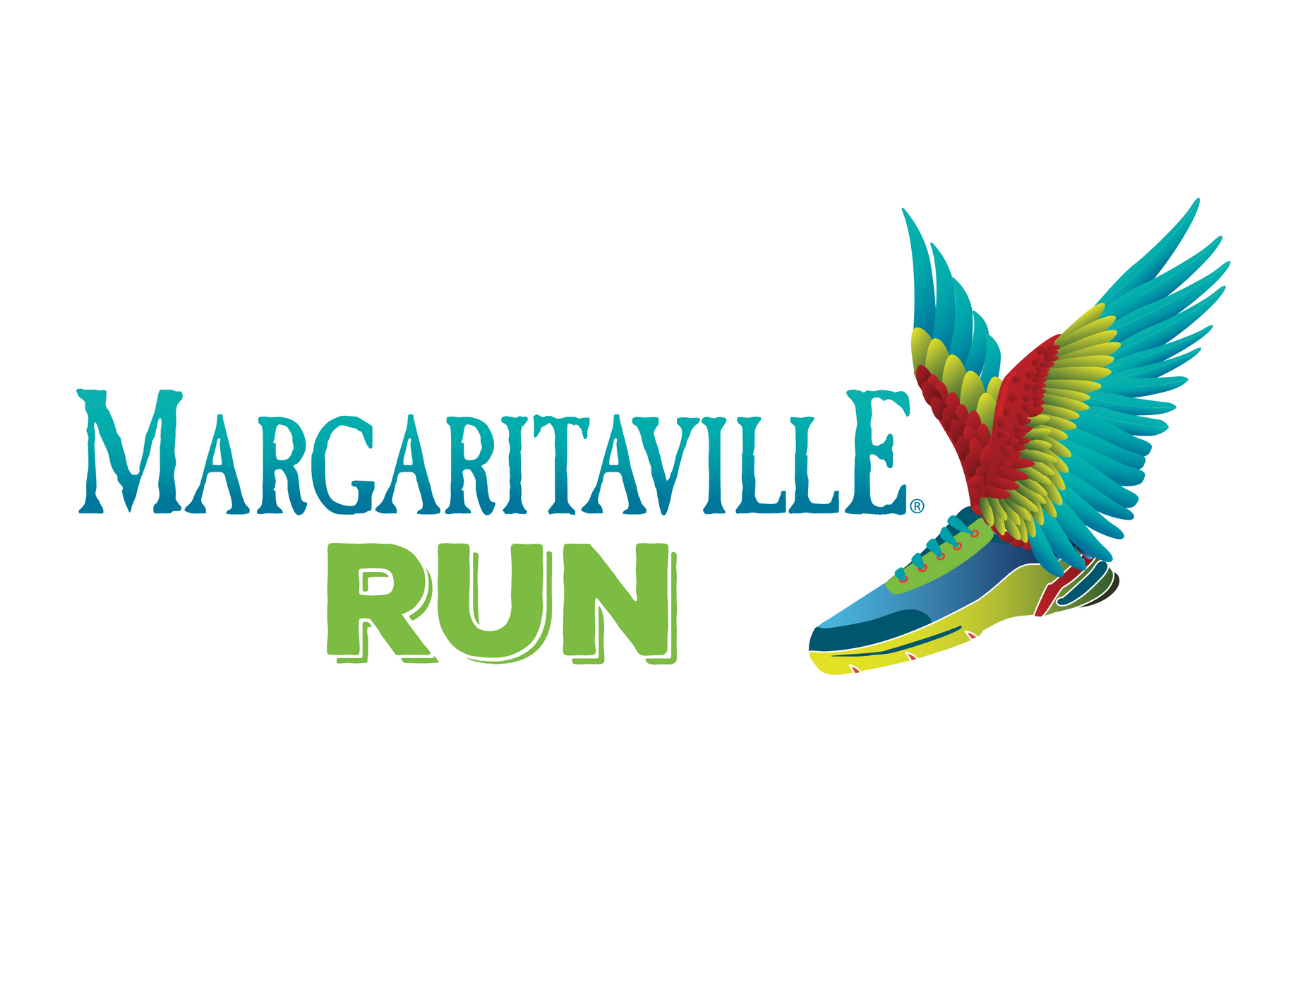 Margaritaville Run anuncia el calendario de eventos de la serie para 2022